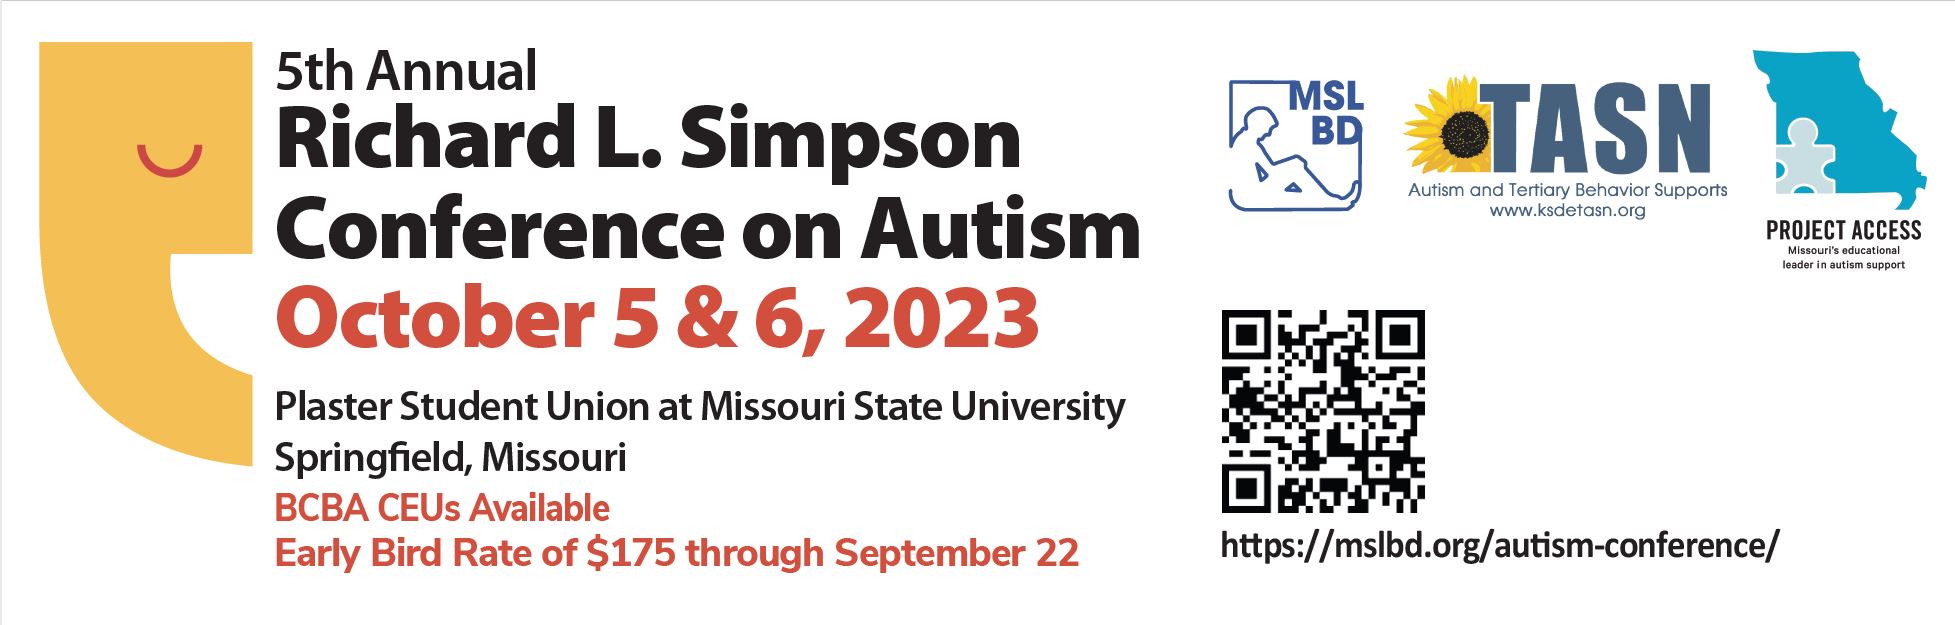 Rich Simpson Autism Conference